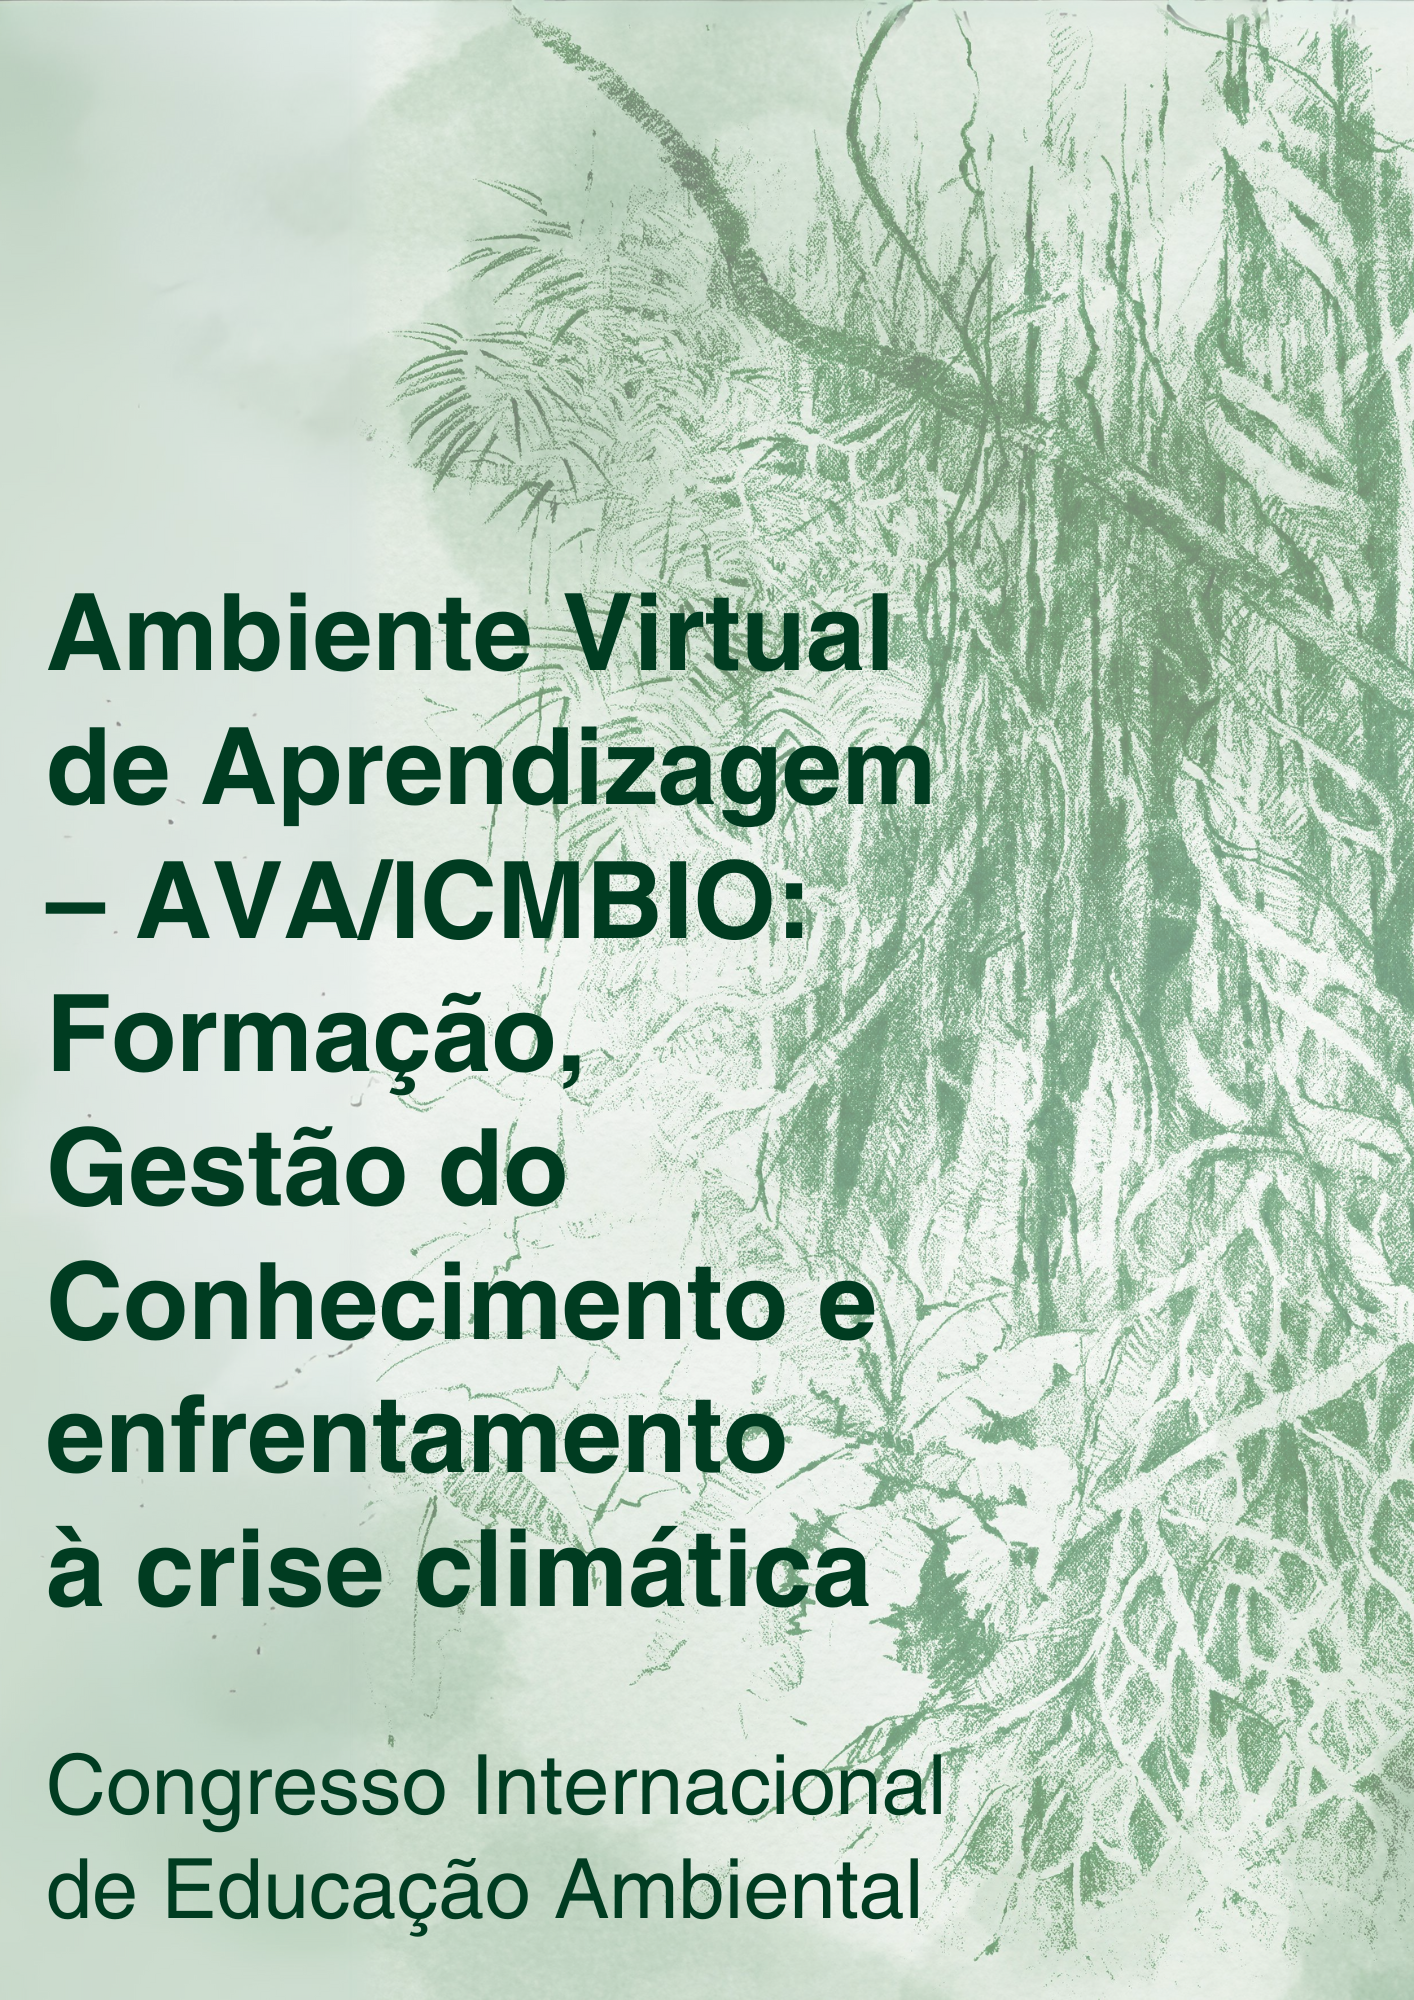 AVAICMBIO Formação, Gestão do Conhecimento e enfrentamento à crise climática – Congresso Internacional de Educação Ambiental